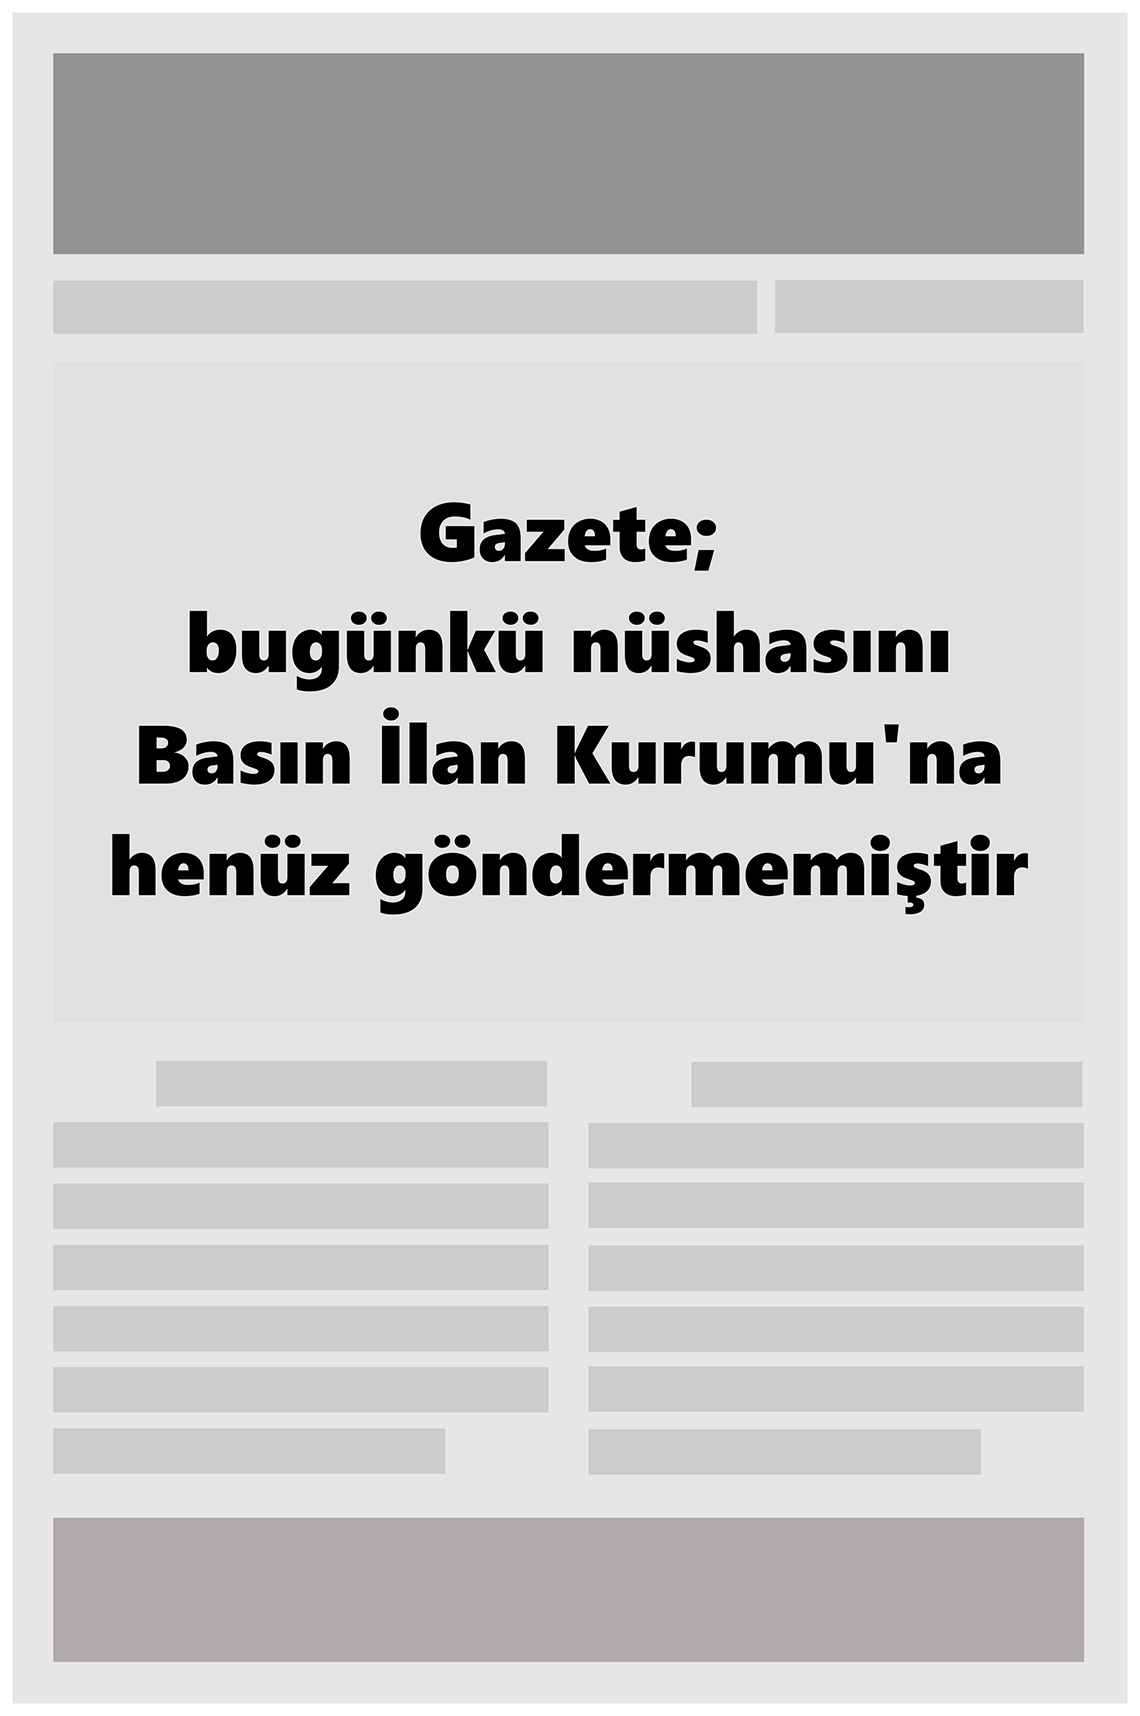 15 Ocak 2022 Büyükşehir Merhaba GAzetesi Gazete Manşeti